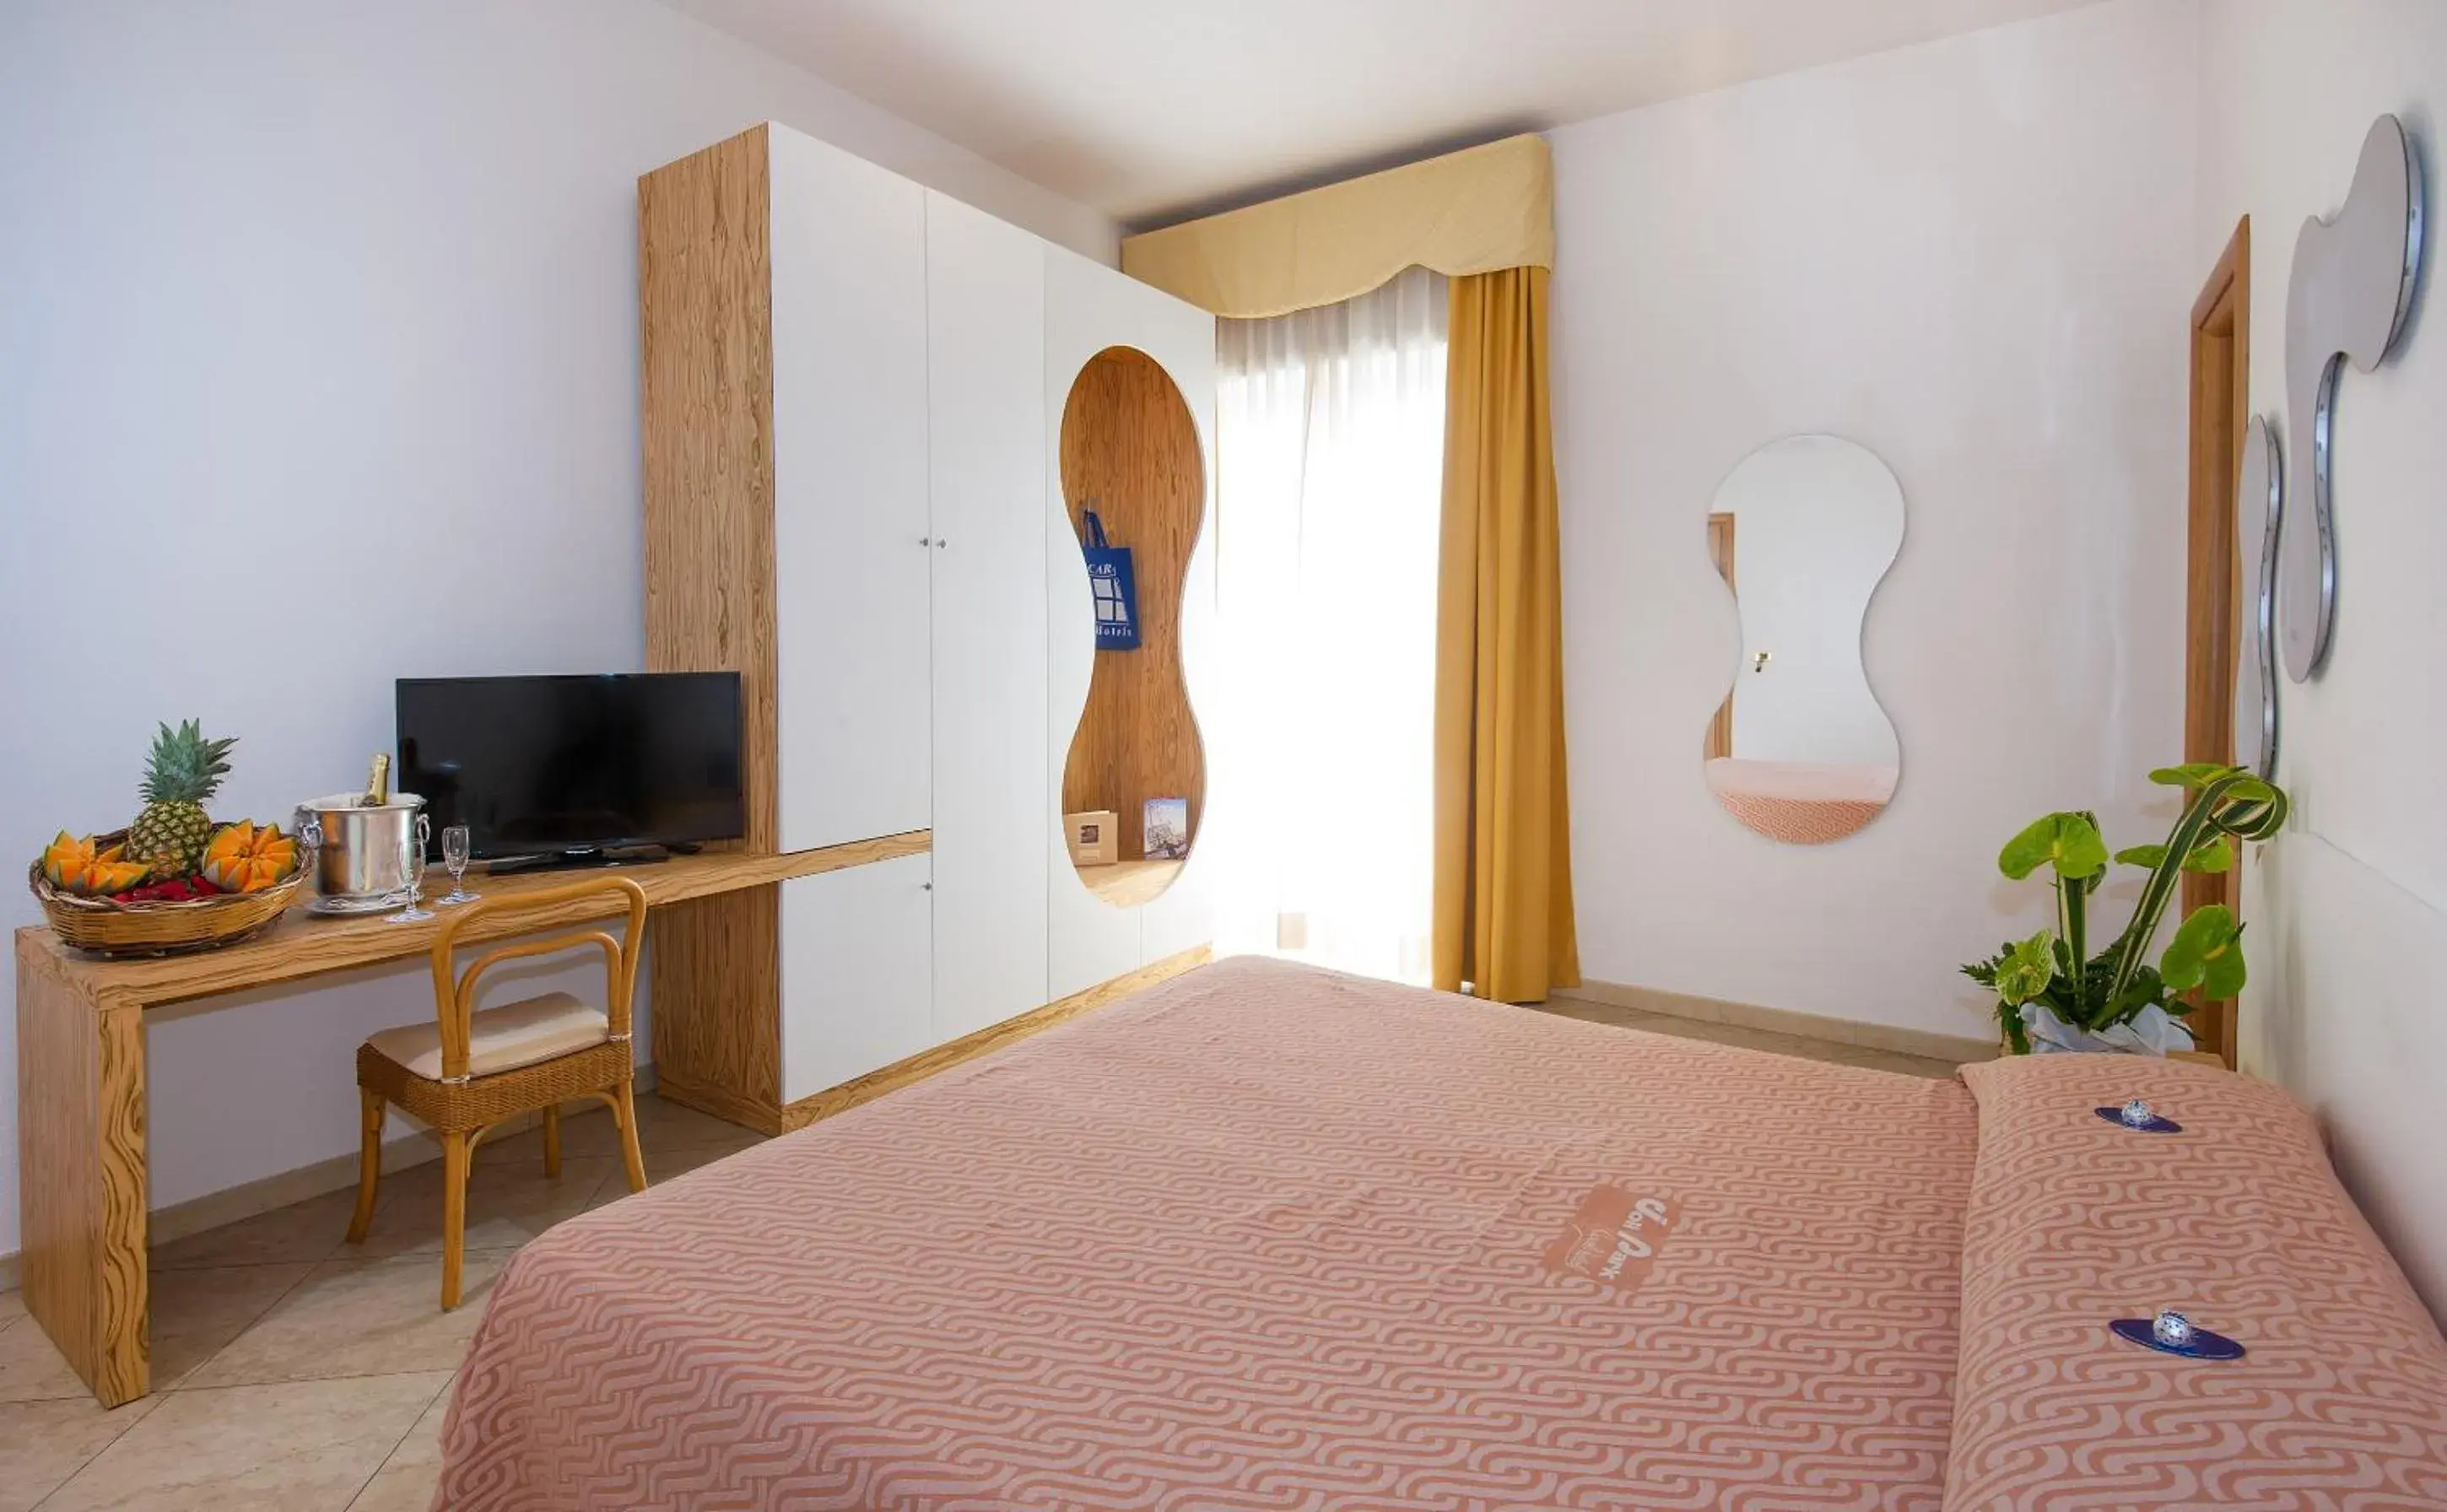 Bed, Room Photo in Joli Park Hotel - Caroli Hotels